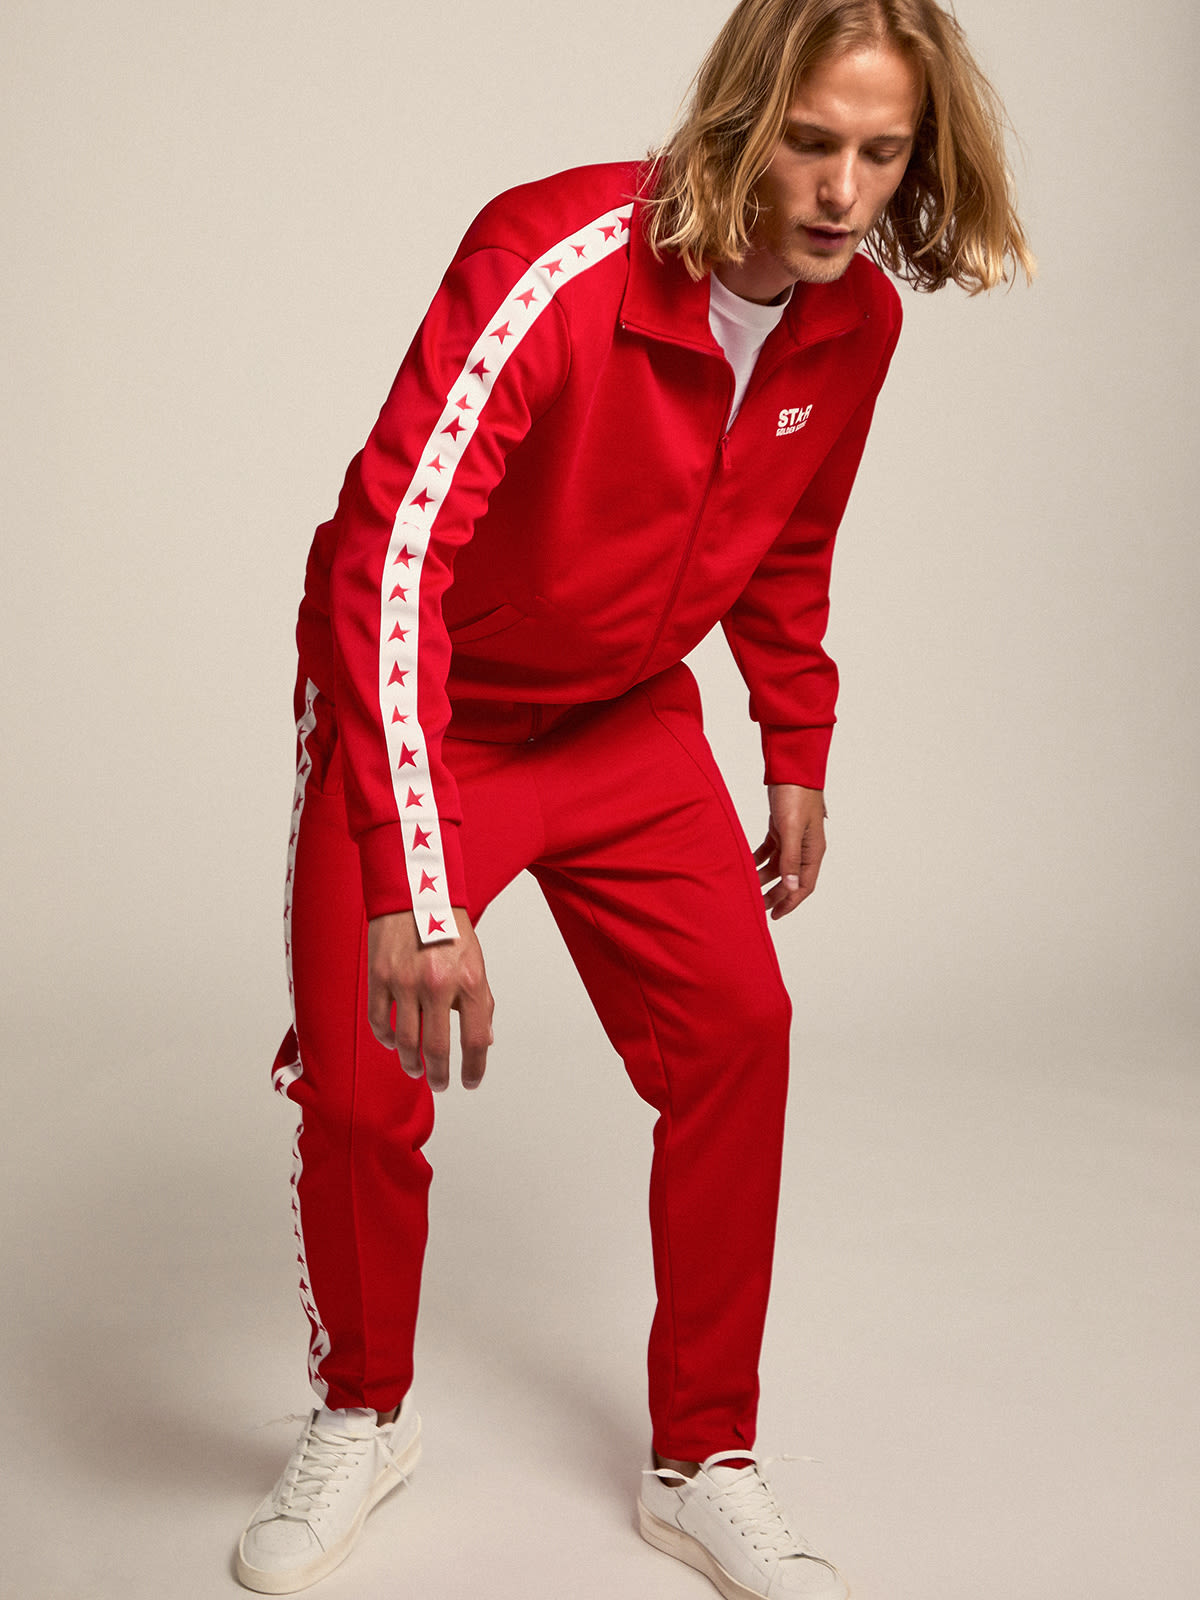 Golden Goose - Pantalon de jogging homme couleur rouge avec étoiles sur les côtés in 